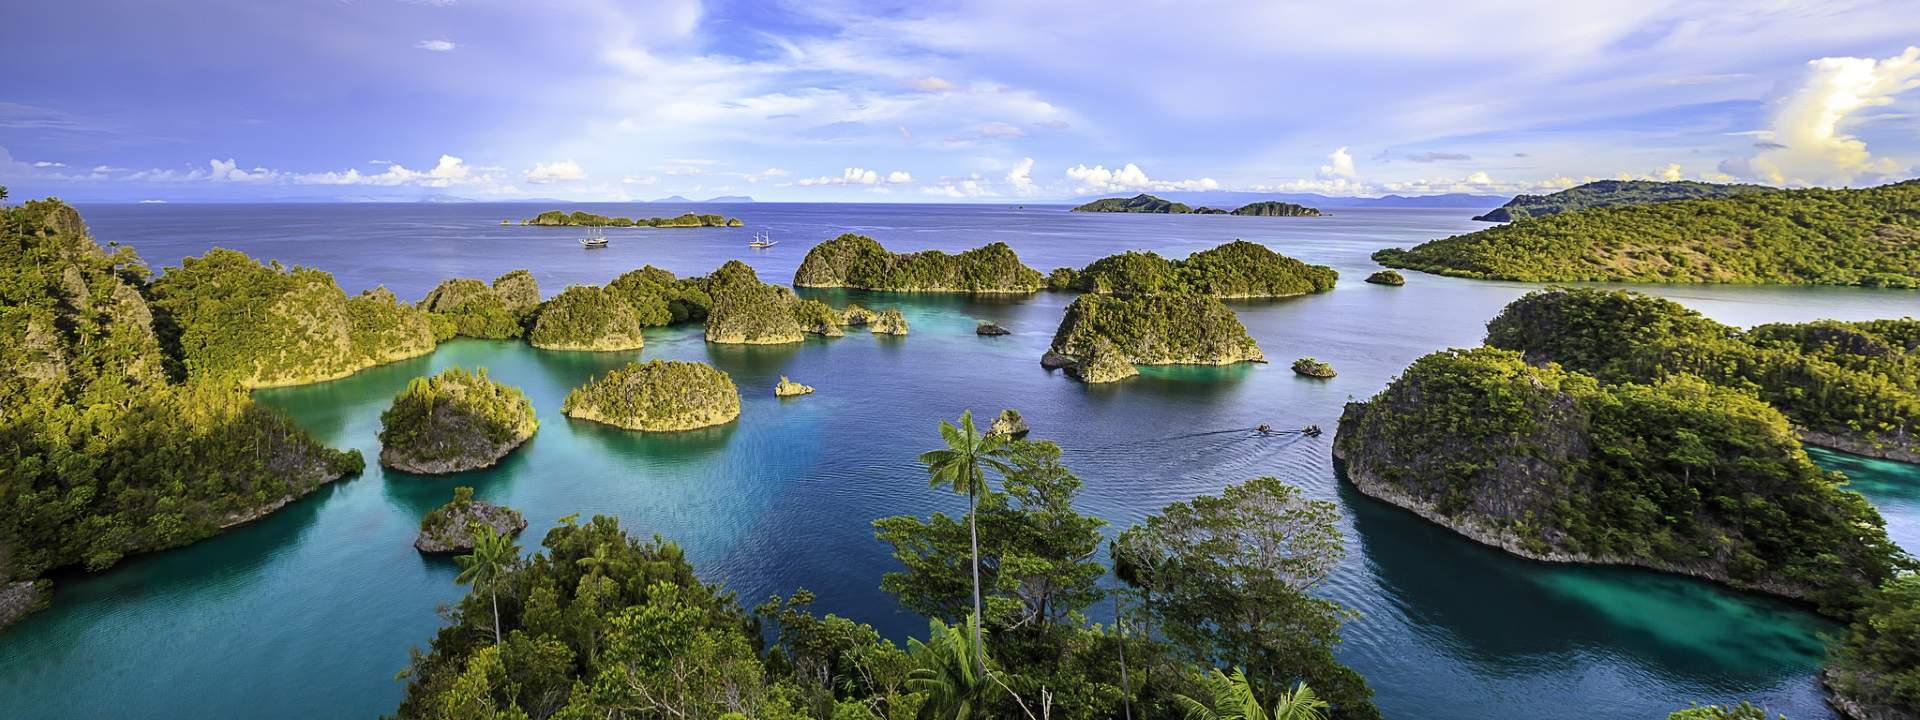 15 Tage lang Tauchen im indonesischen Raja Ampat Archipel